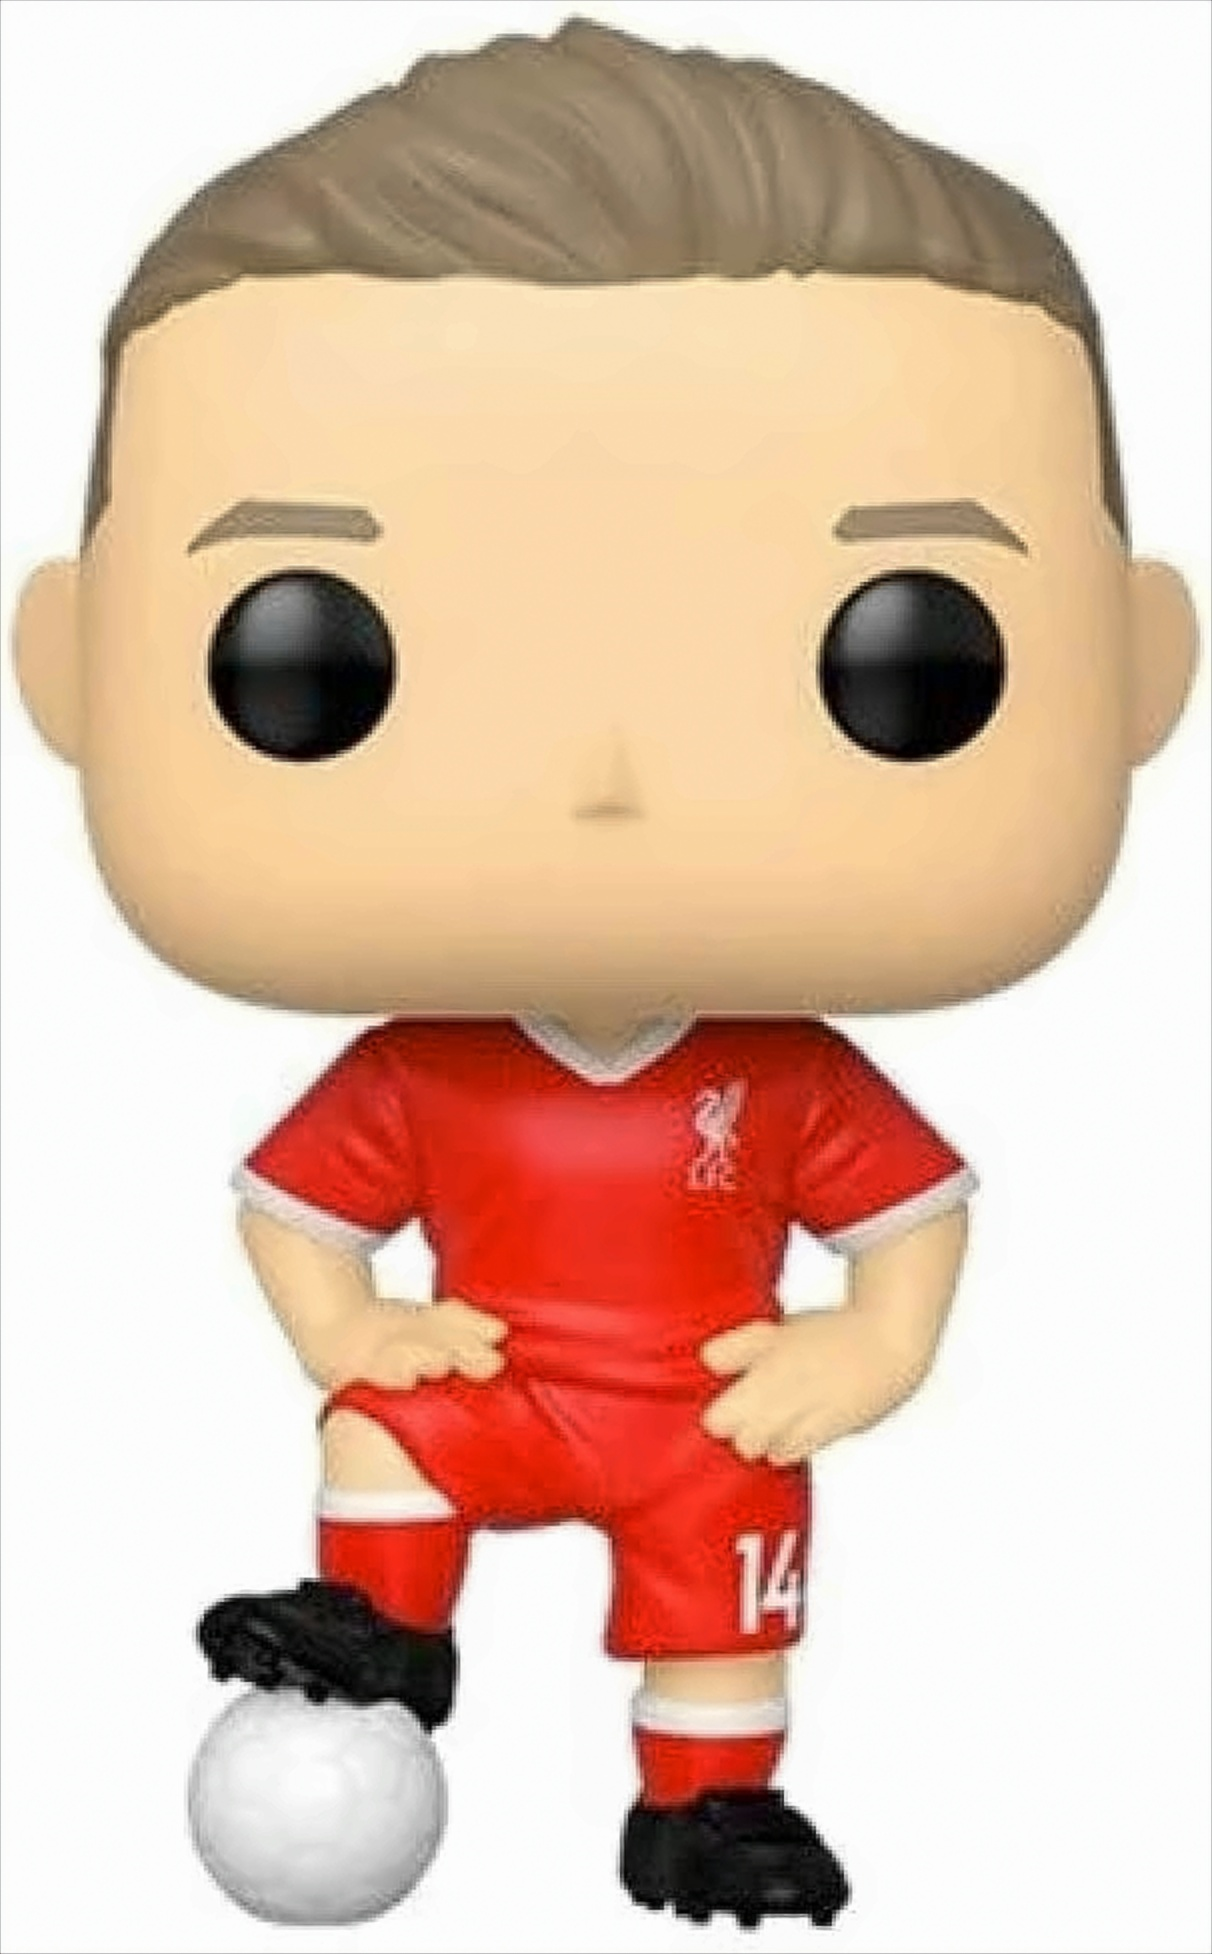 FC POP - Liverpool / - Jordan Henderson Fussball